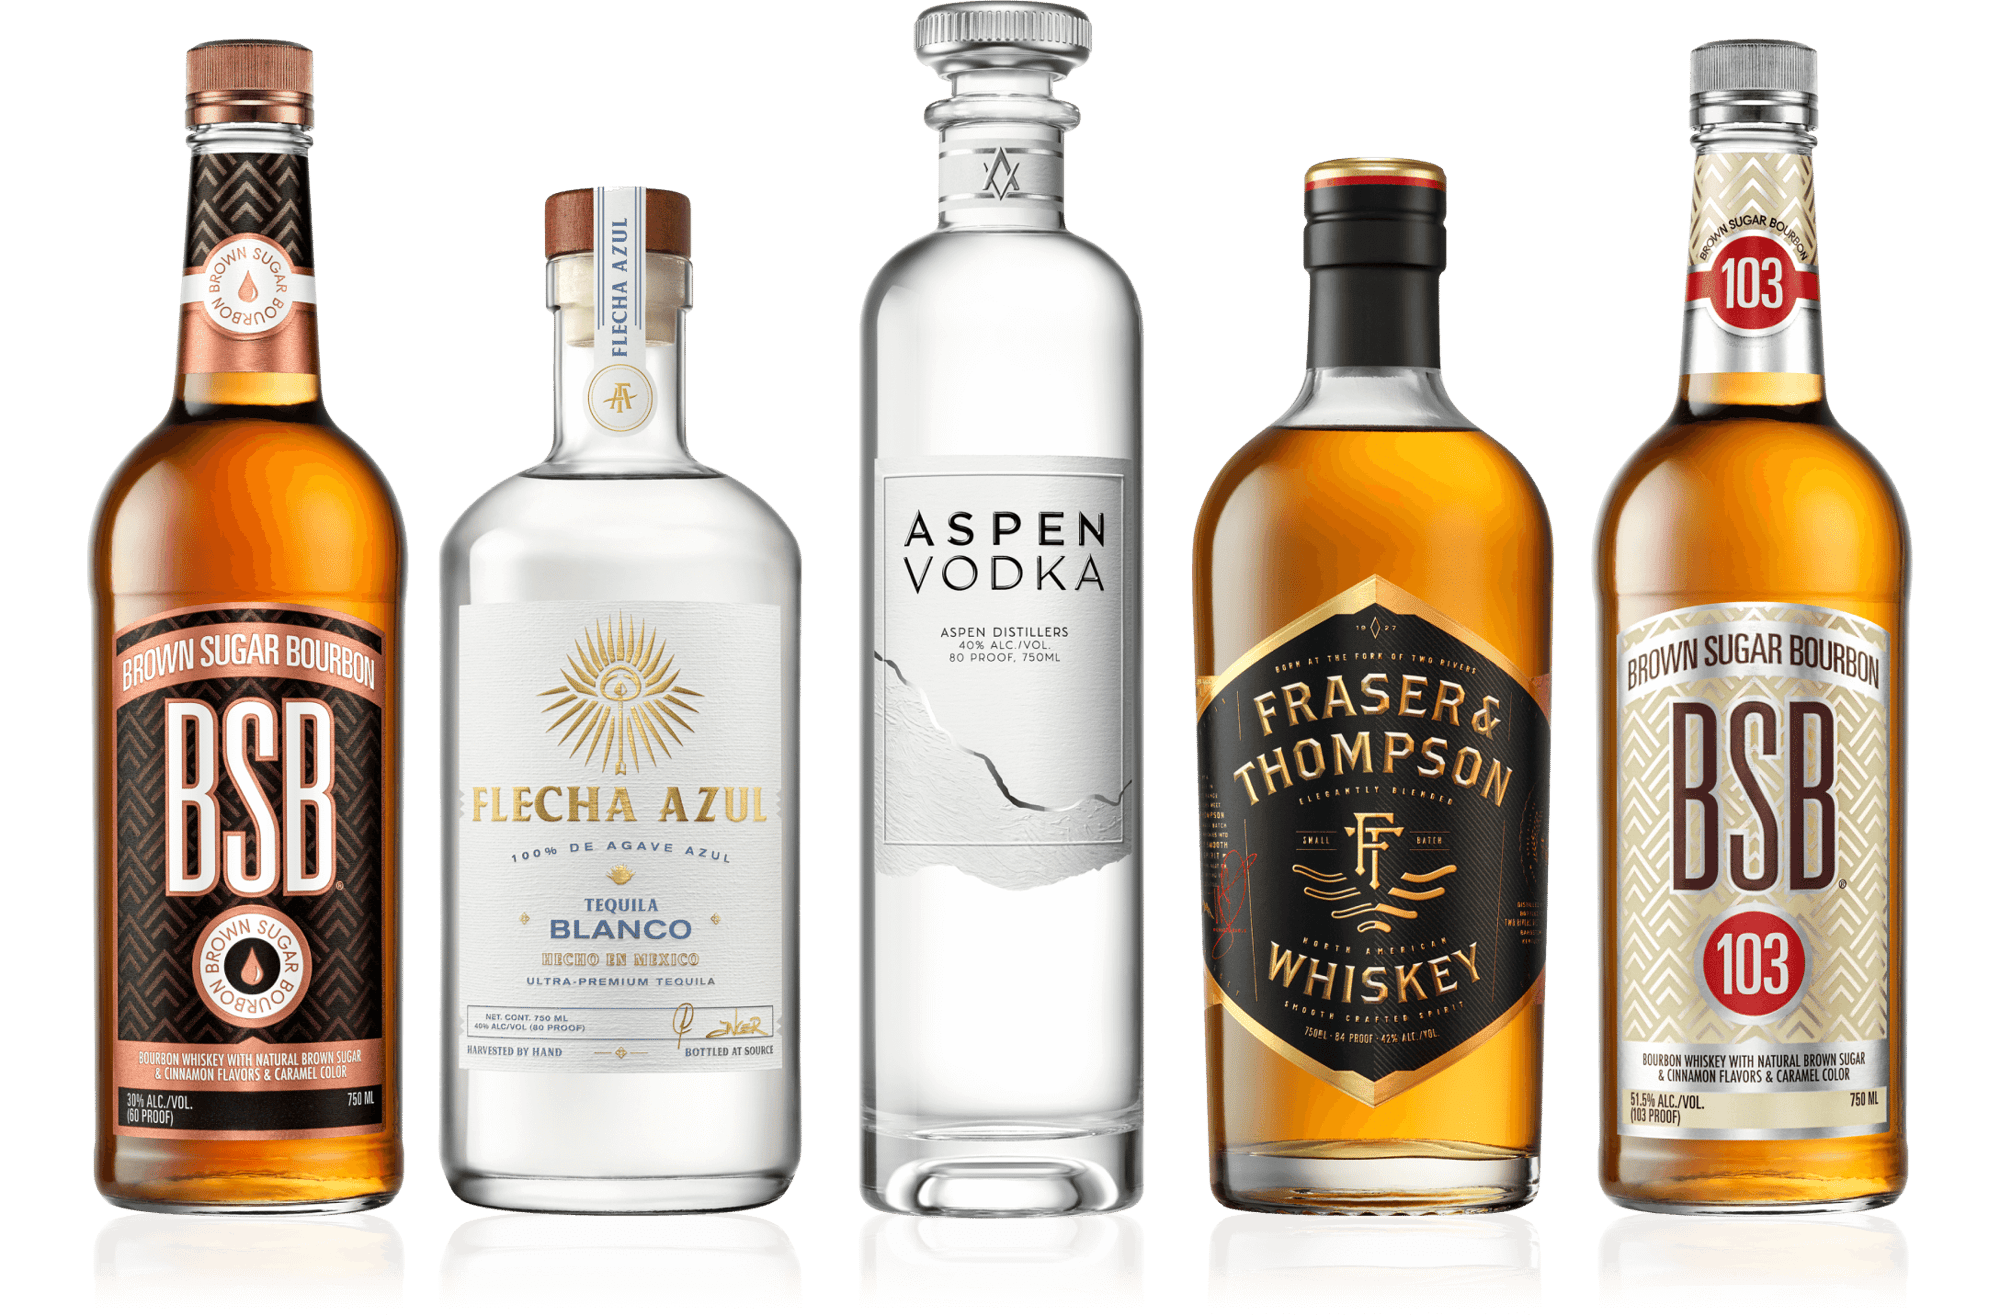 Flecha Azul, BSB, Fraser & Thompson, and Aspen Vodka bottles